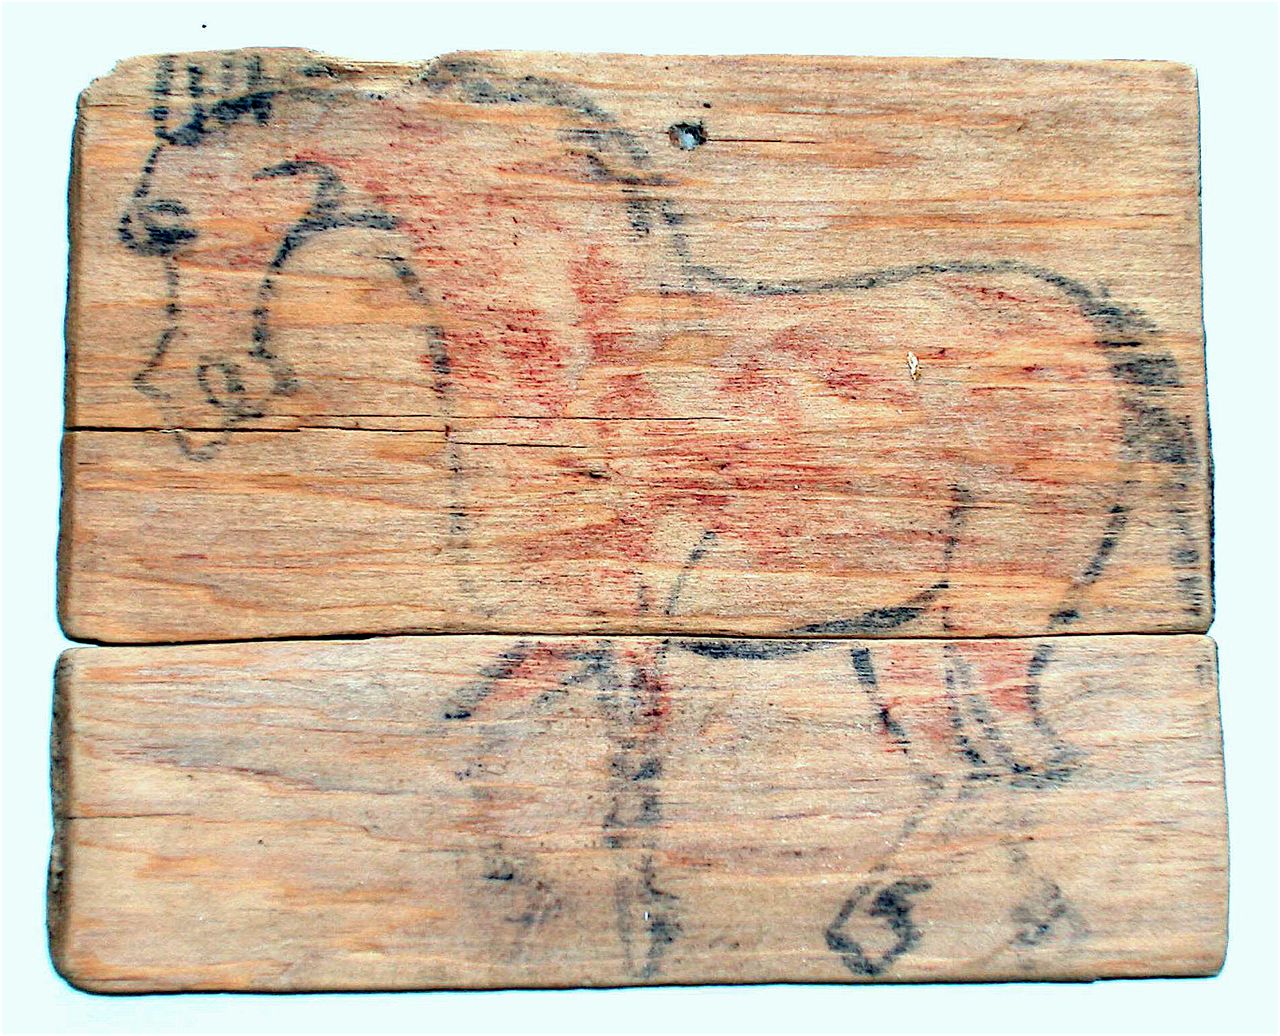 أحد أقدم ألواح إيما التي كانت تقدم كنذور في اليابان، وقد استخرجت من موقع إيبا الأثري (الصورة بإذن من متحف مدينة هاماماتسو التاريخي).